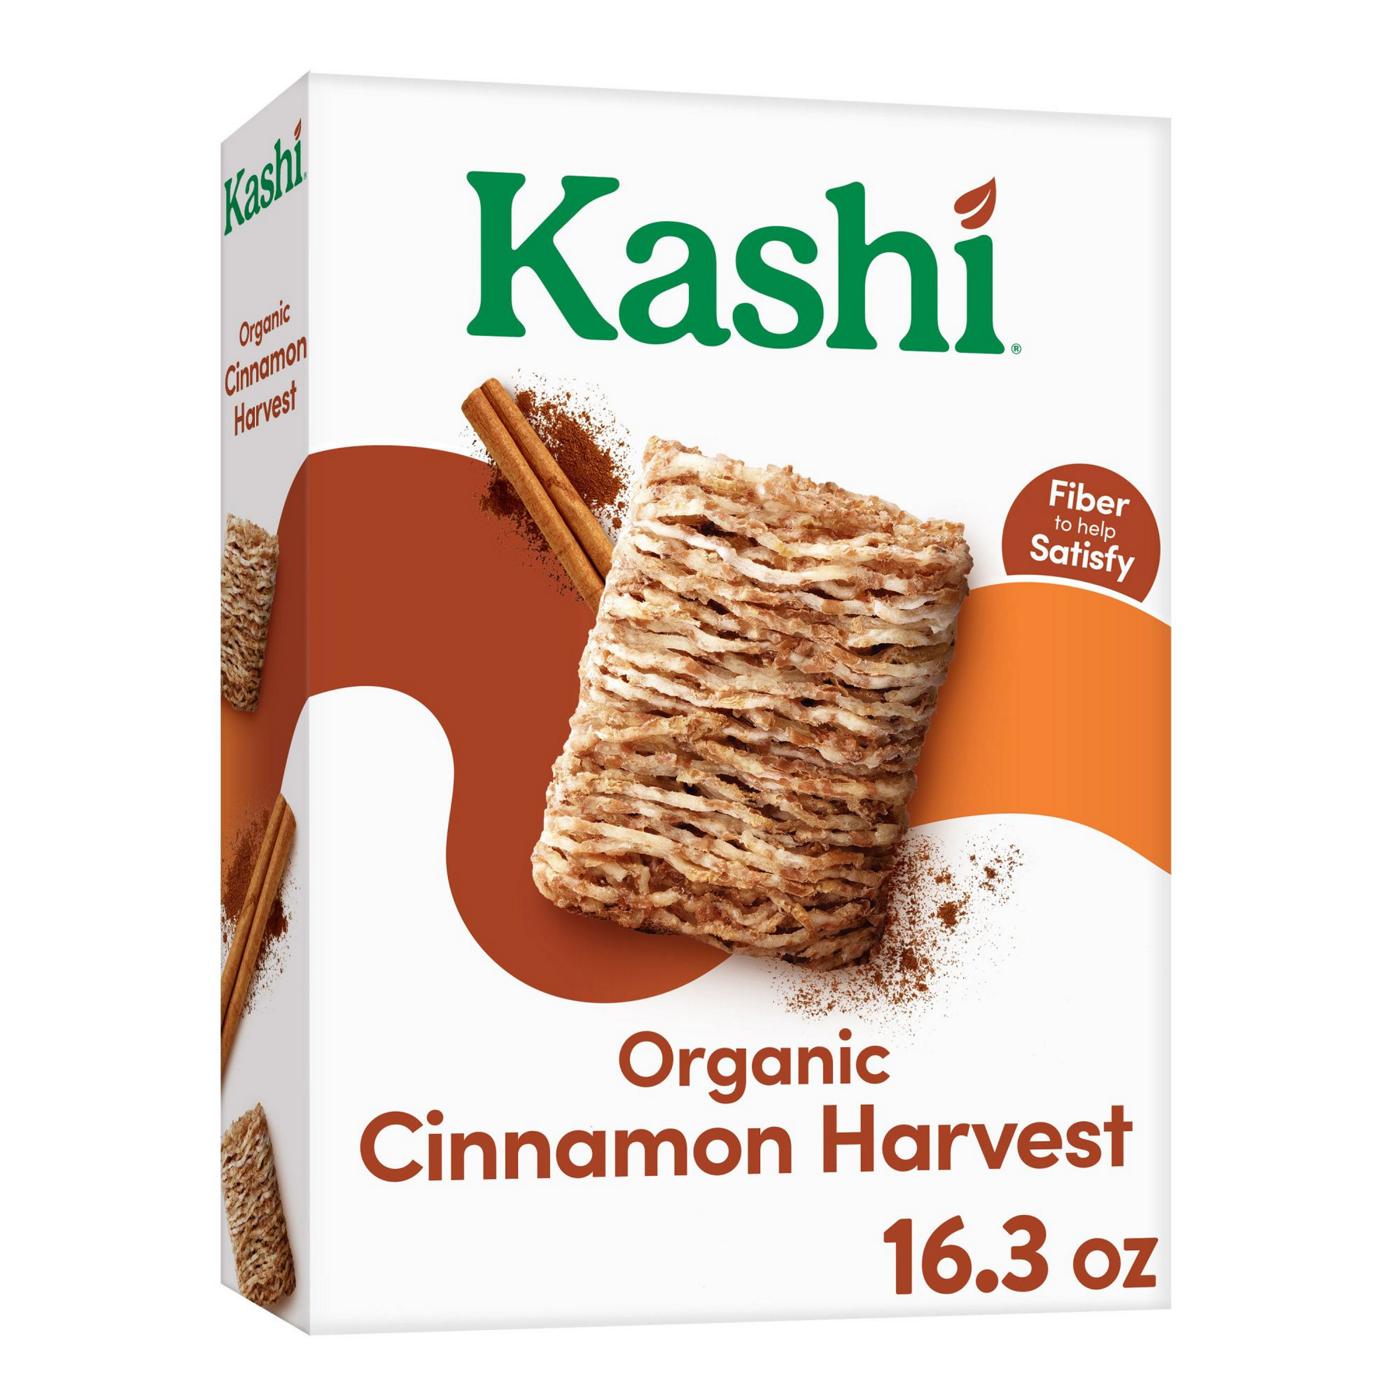 Kashi Cinnamon Harvest Organic Breakfast Cereal; image 1 of 11